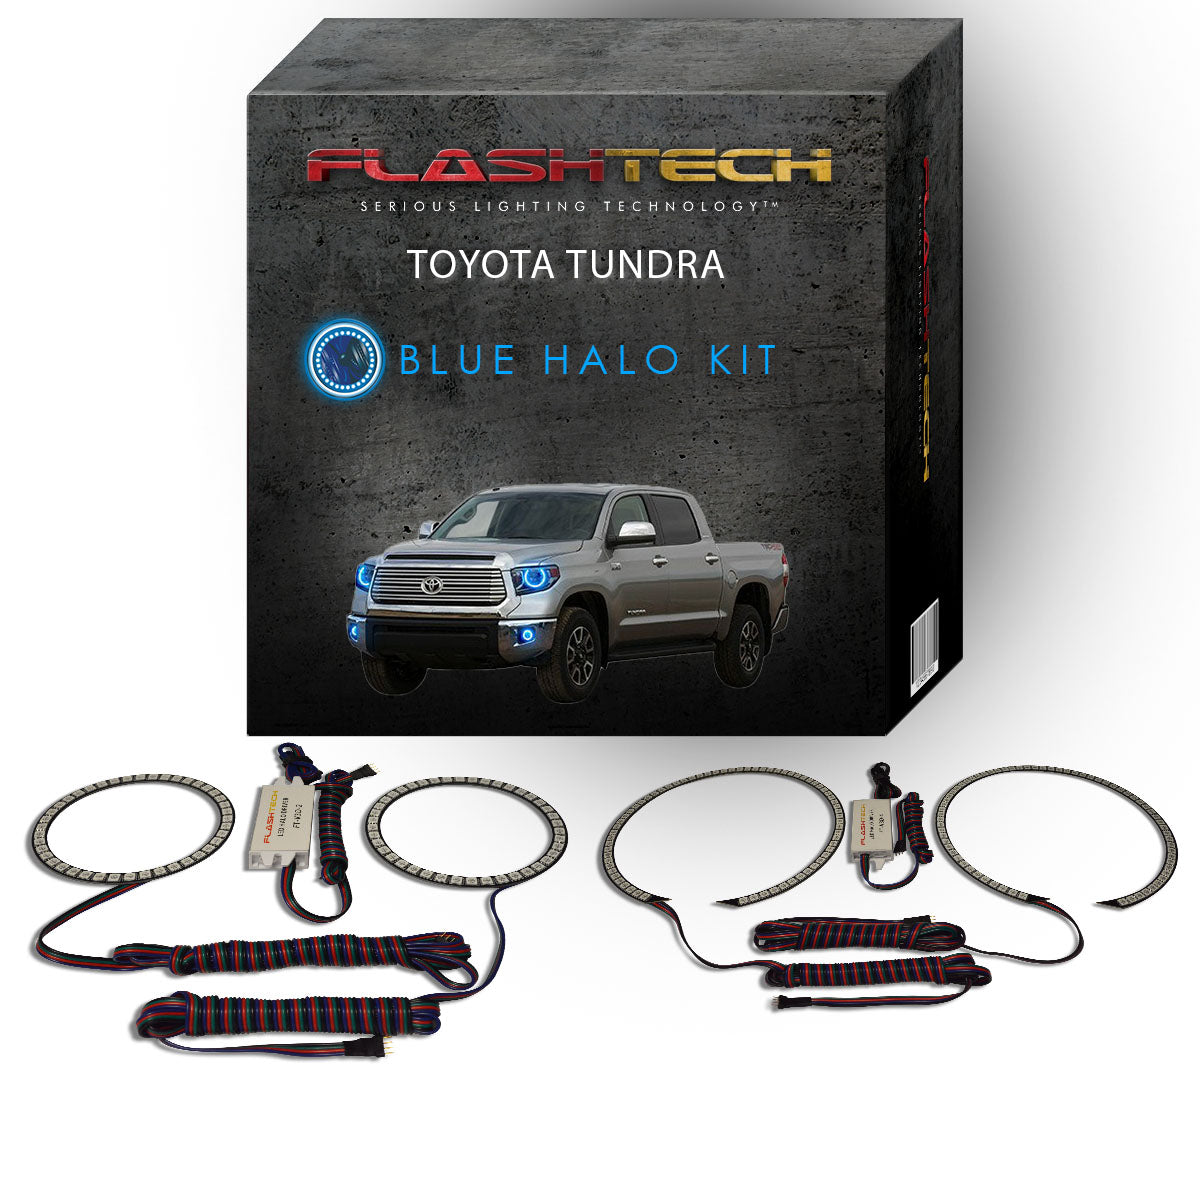 Toyota-Tundra-2014, 2015, 2016-LED-Halo-Headlights and Fog Lights-RGB-No Remote-TO-TU1415-V3HF